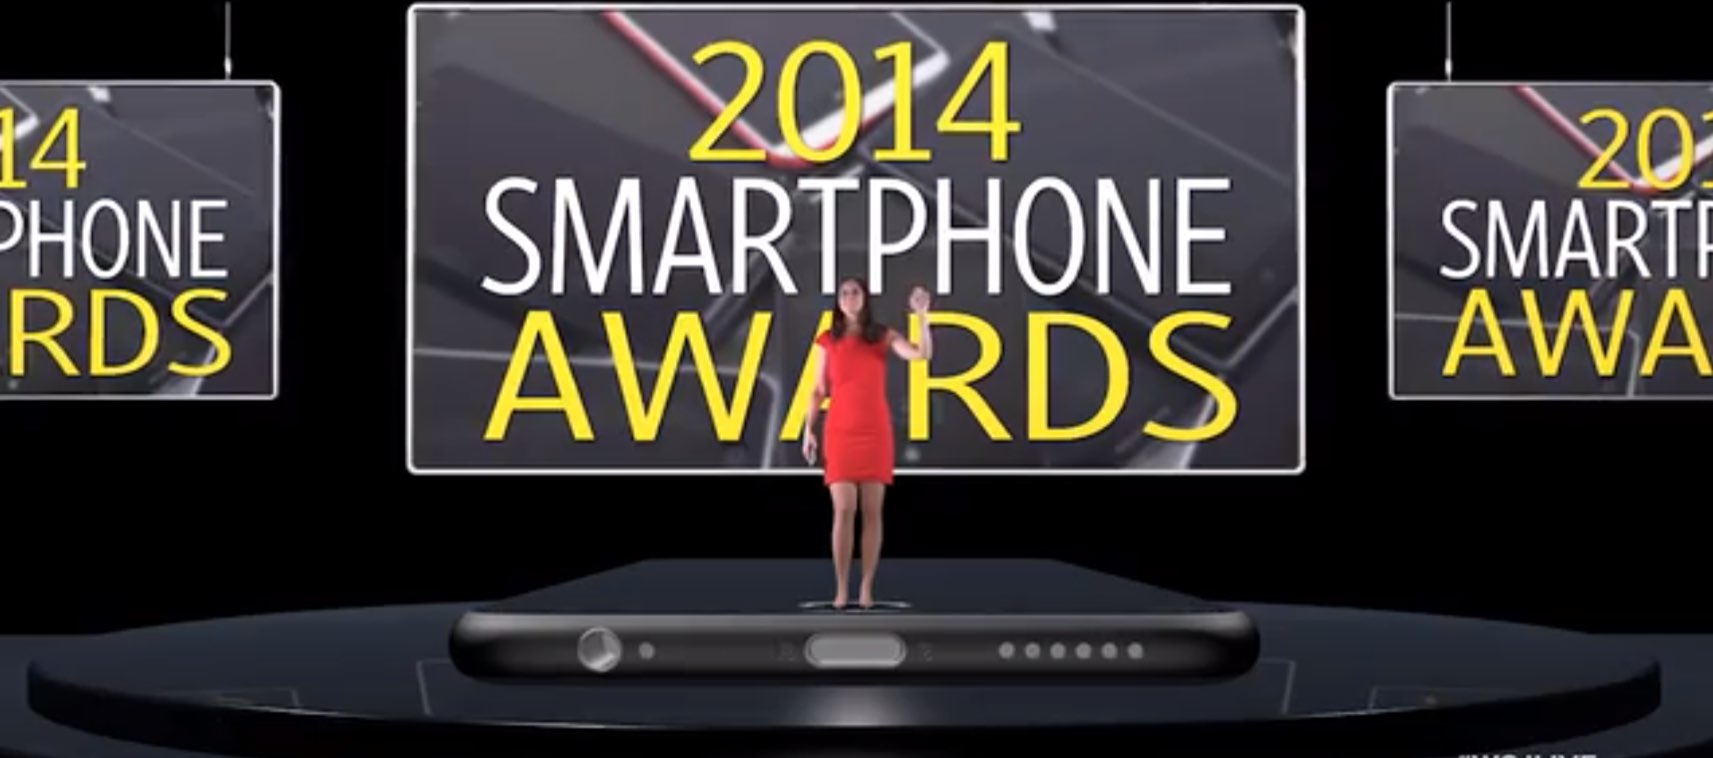 WSJ: iPhone 6 & iPhone 6 Plus BESTE SMARTPHONES 2014! 8